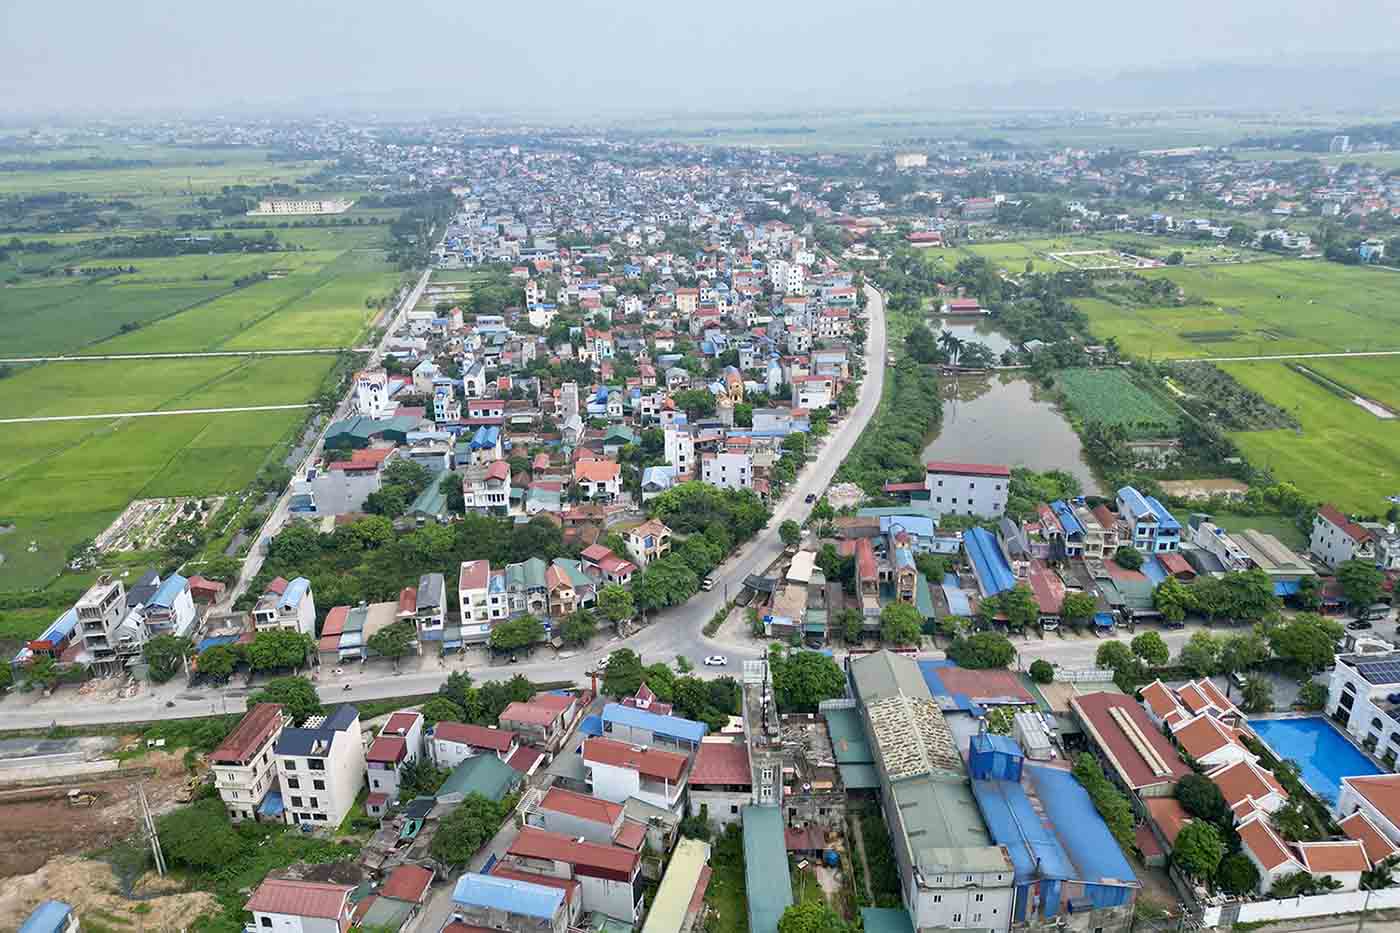 Quốc lộ 21B, đoạn qua huyện Ứng Hòa, Hà Nội dài khoảng 22km, trong đó, đoạn từ tỉnh lộ 424 đến hết địa phận Ứng Hoà dài khoảng 10km chưa được mở rộng. Ảnh: Hữu Chánh